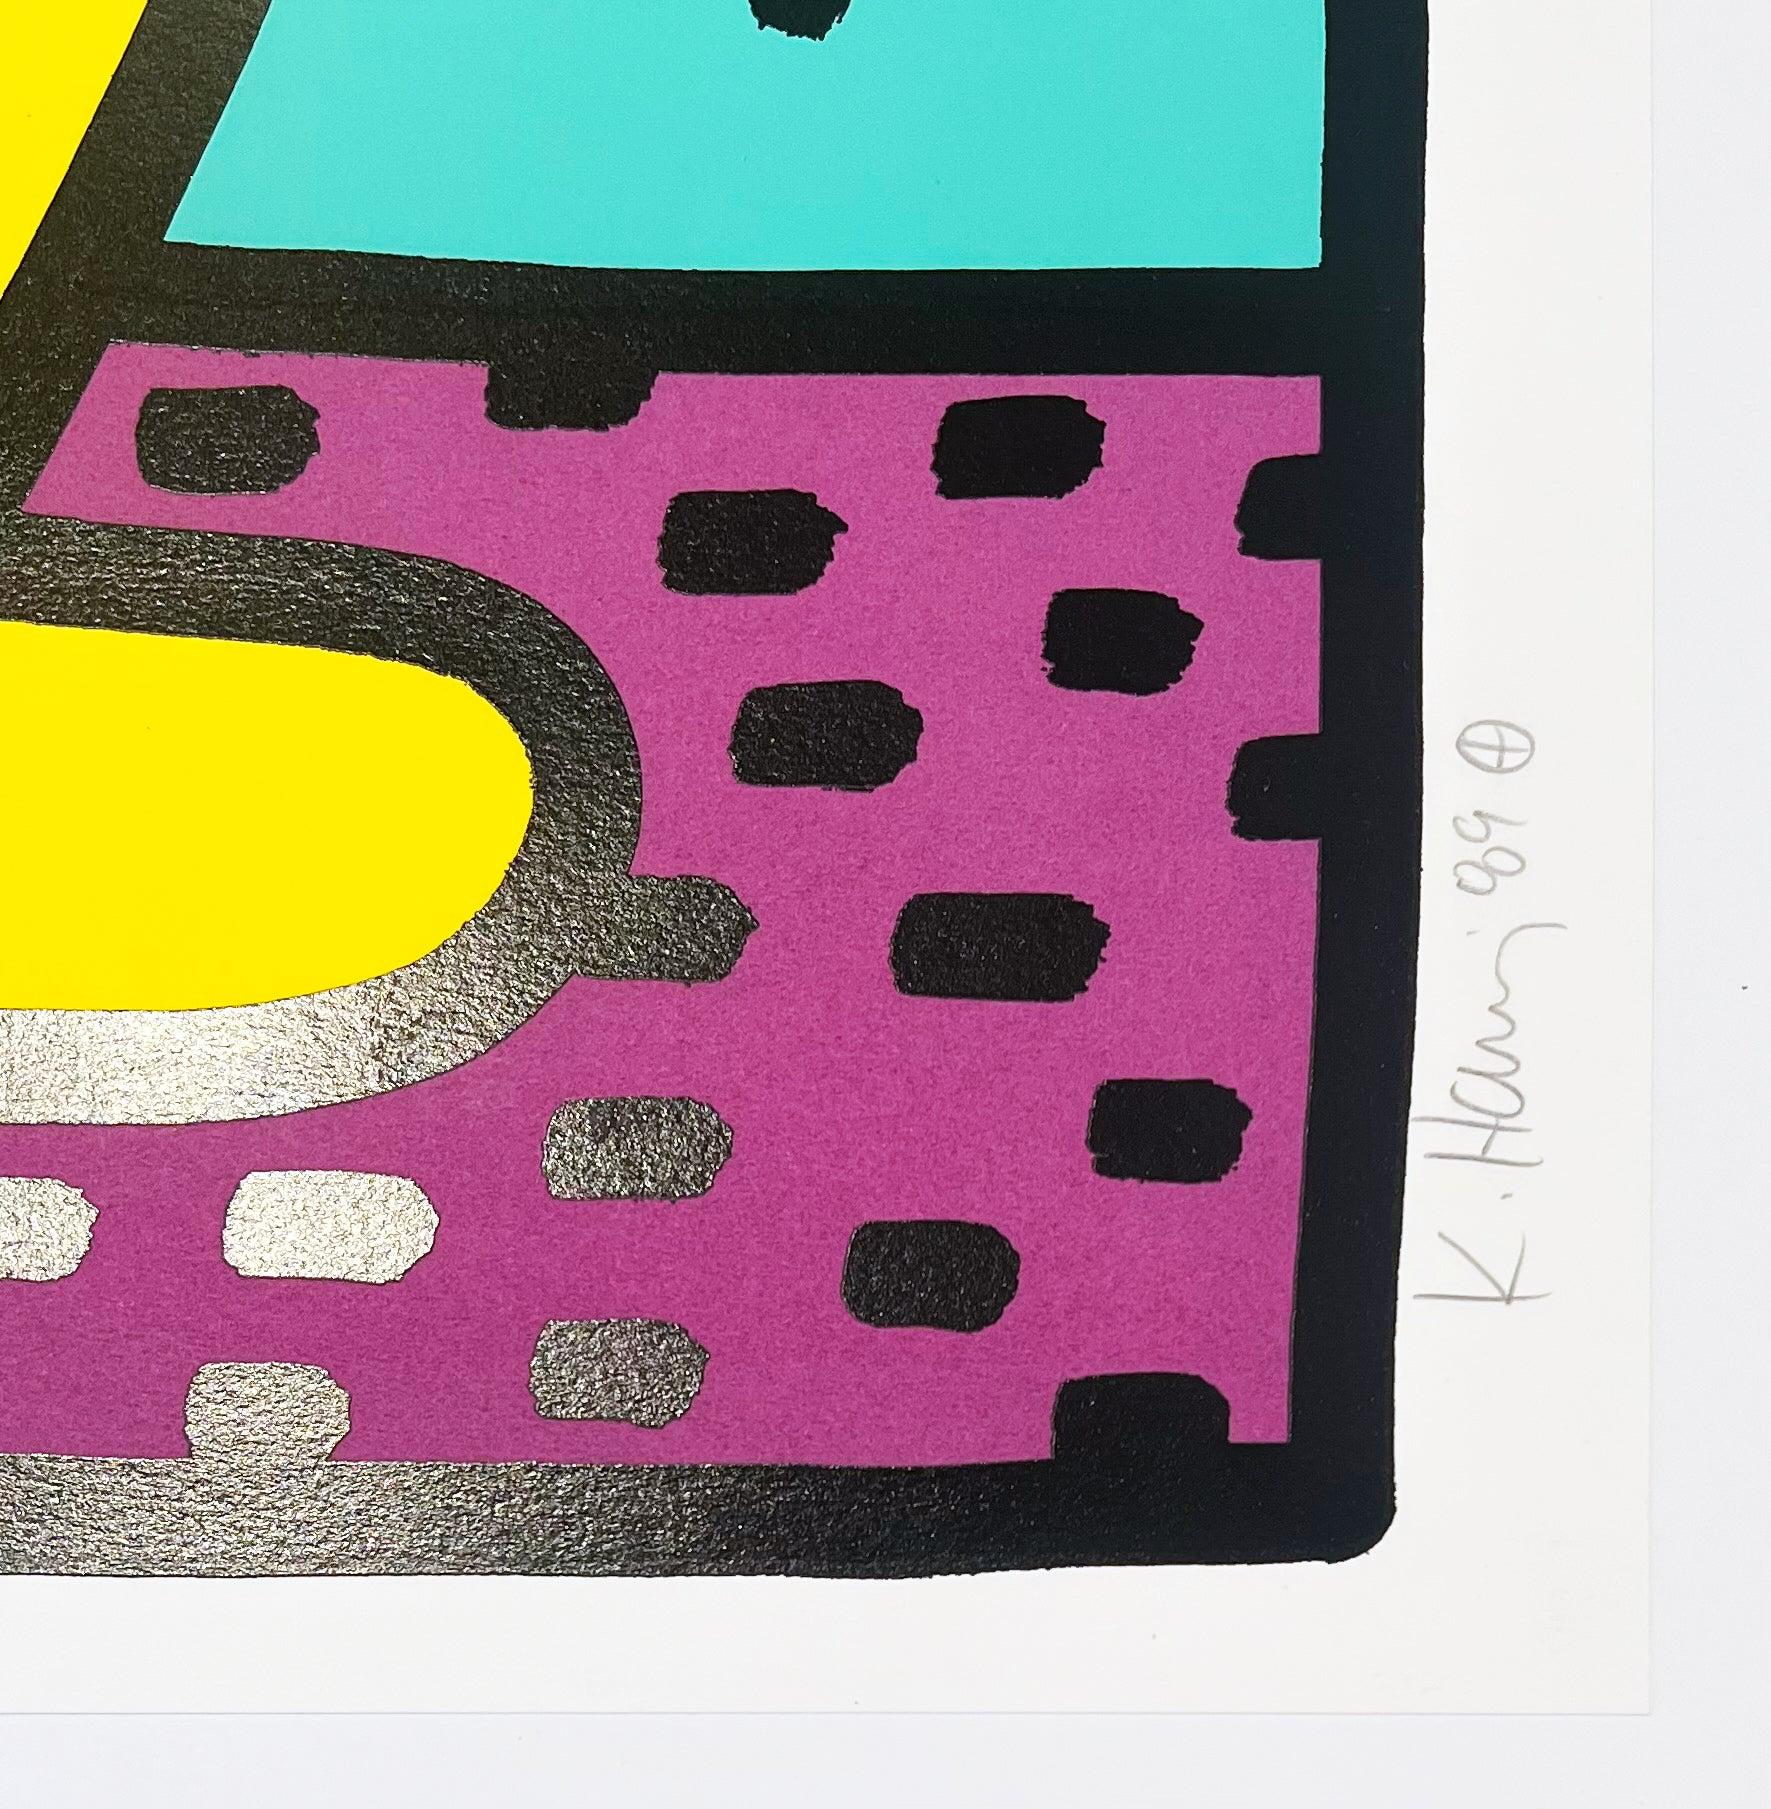 Artiste : Keith Haring
Titre : Sans titre (Cup Man)
Portefeuille : Kinderstern
Médium : Sérigraphie en couleurs sur papier vélin
Date : 1989
Edition : 48/100
Taille du cadre : 37 3/4